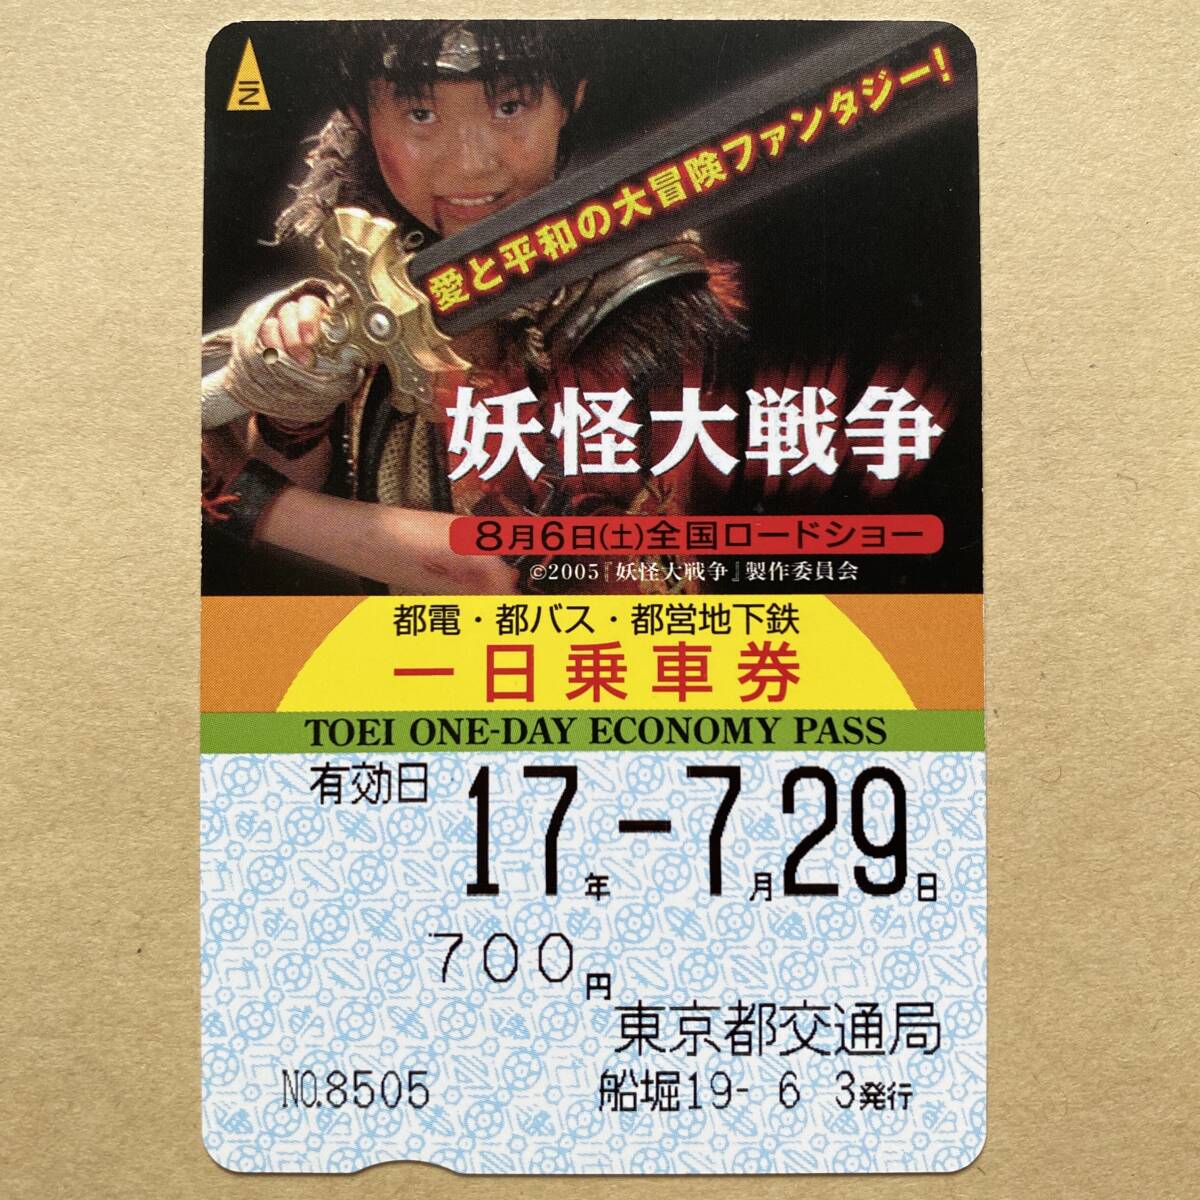 [ использованный ] фильм один день пассажирский билет Tokyo Metropolitan area транспорт отдел .. большой война бог дерево ...